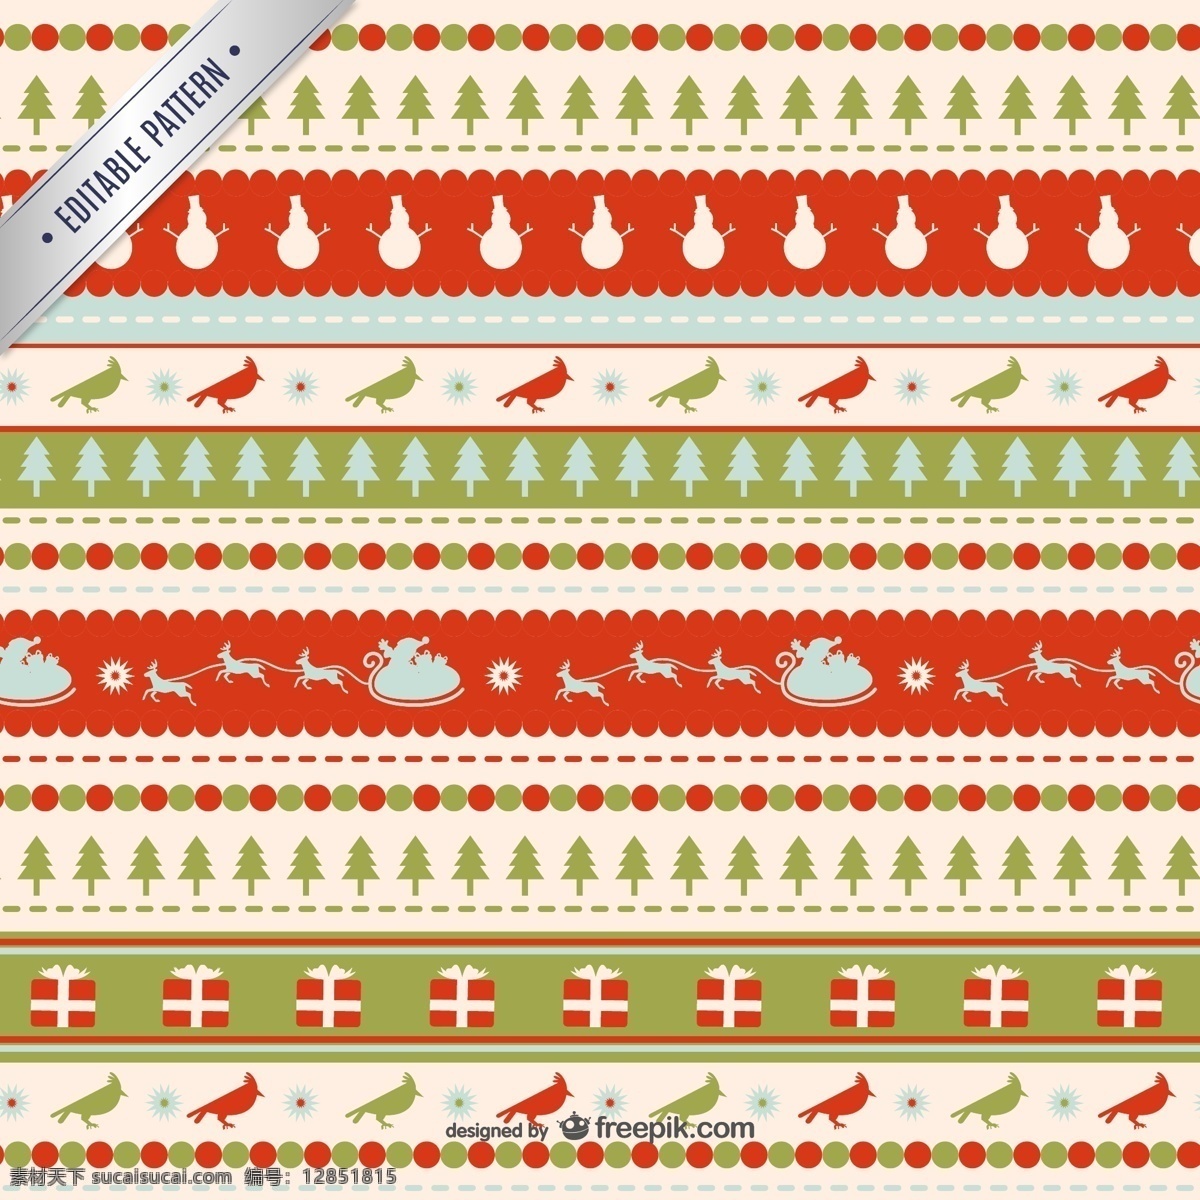 圣诞 花边 条纹 背景 礼盒 鸟 圣诞节 圣诞铃铛 圣诞树 矢量图 雪橇 花边条 节日素材